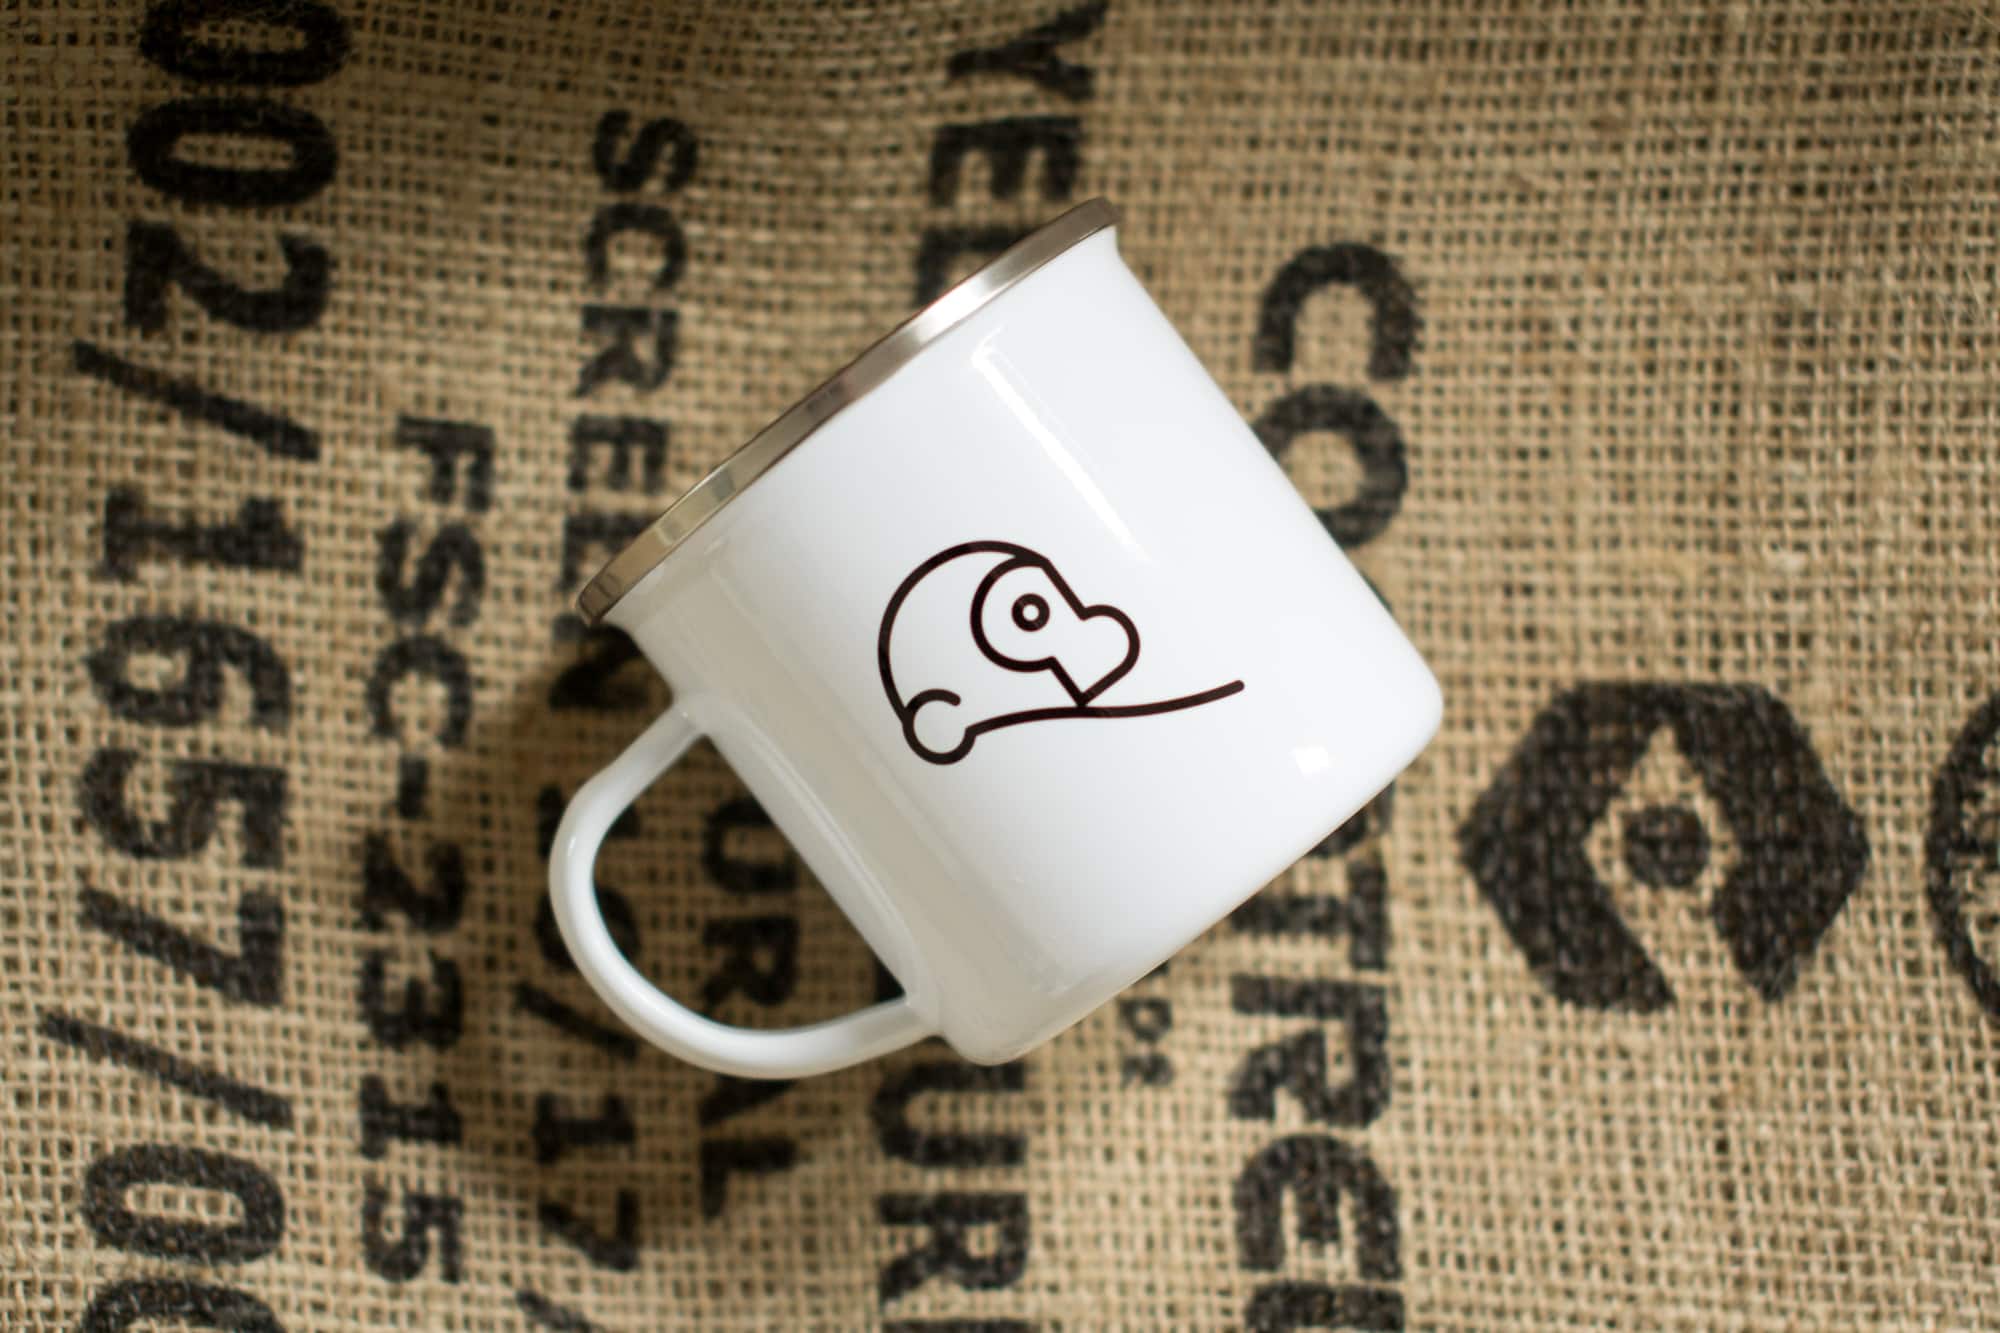 Two Chimps enamel mug on coffee sack